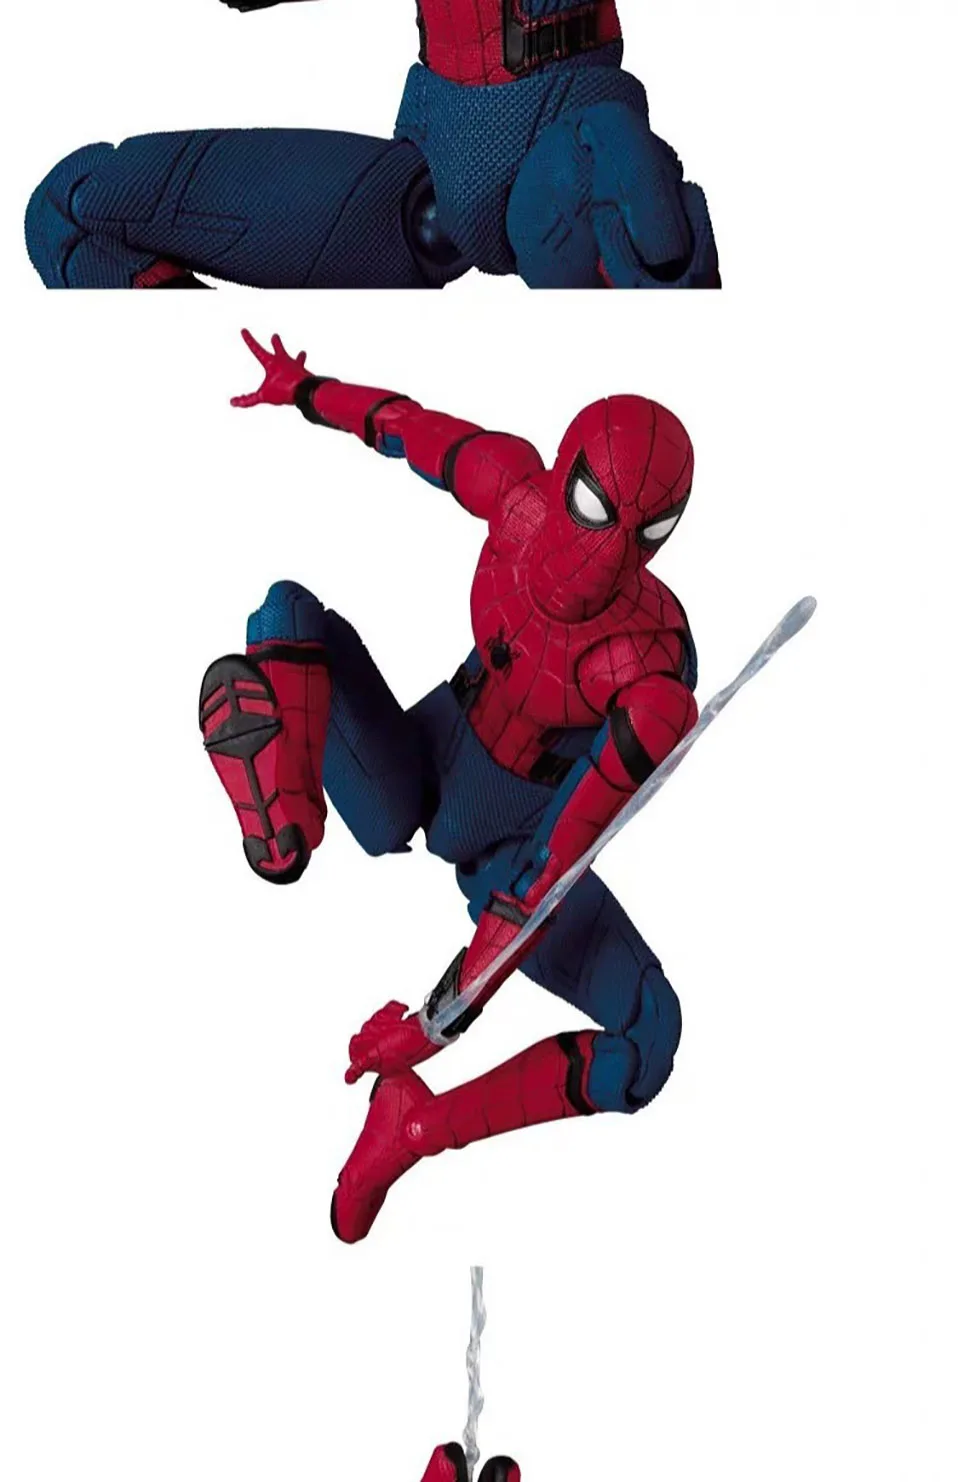 16 см Фигурка Человека-паука игрушка Мстители супер герой Homecoming Человек-паук ПВХ фигурка игрушки Коллекционная модель детская